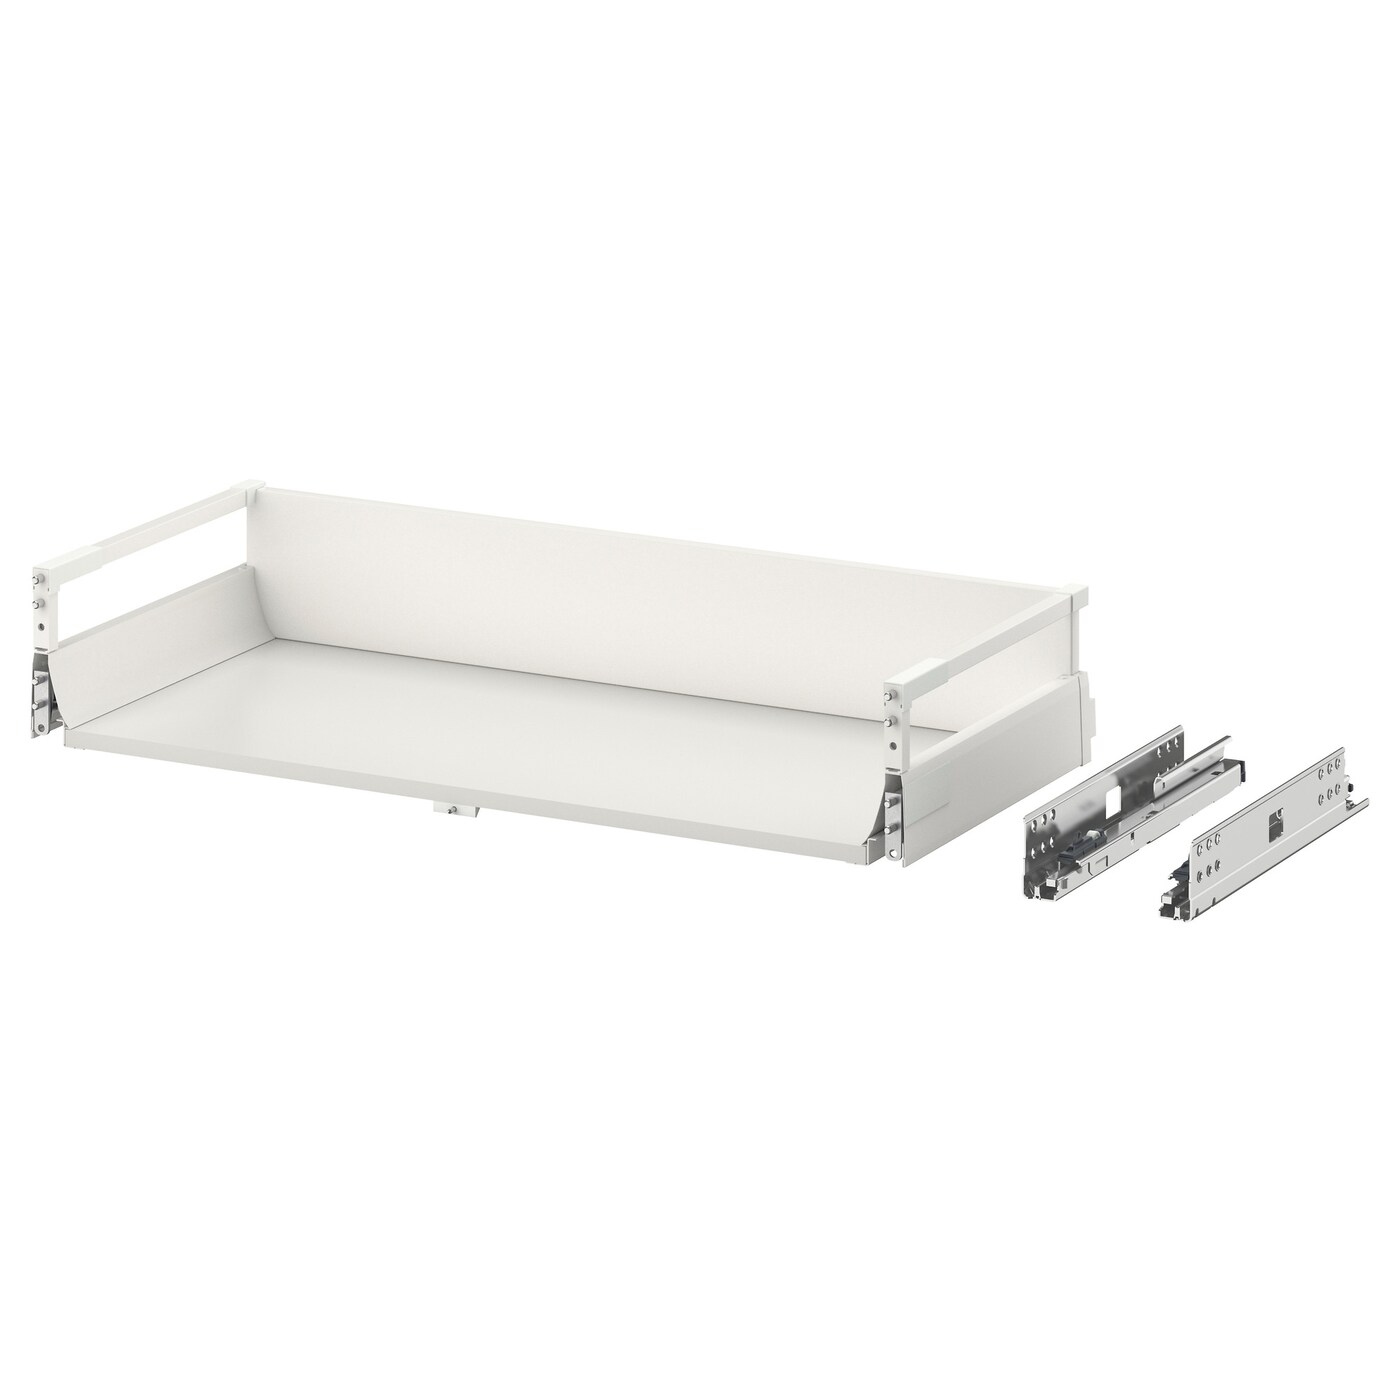 Ящик средний с точечным открыванием -  EXCEPTIONELL IKEA/ ЭКСЕПТИОНЕЛЛЬ  ИКЕА, 76,4х14,4 см, белый